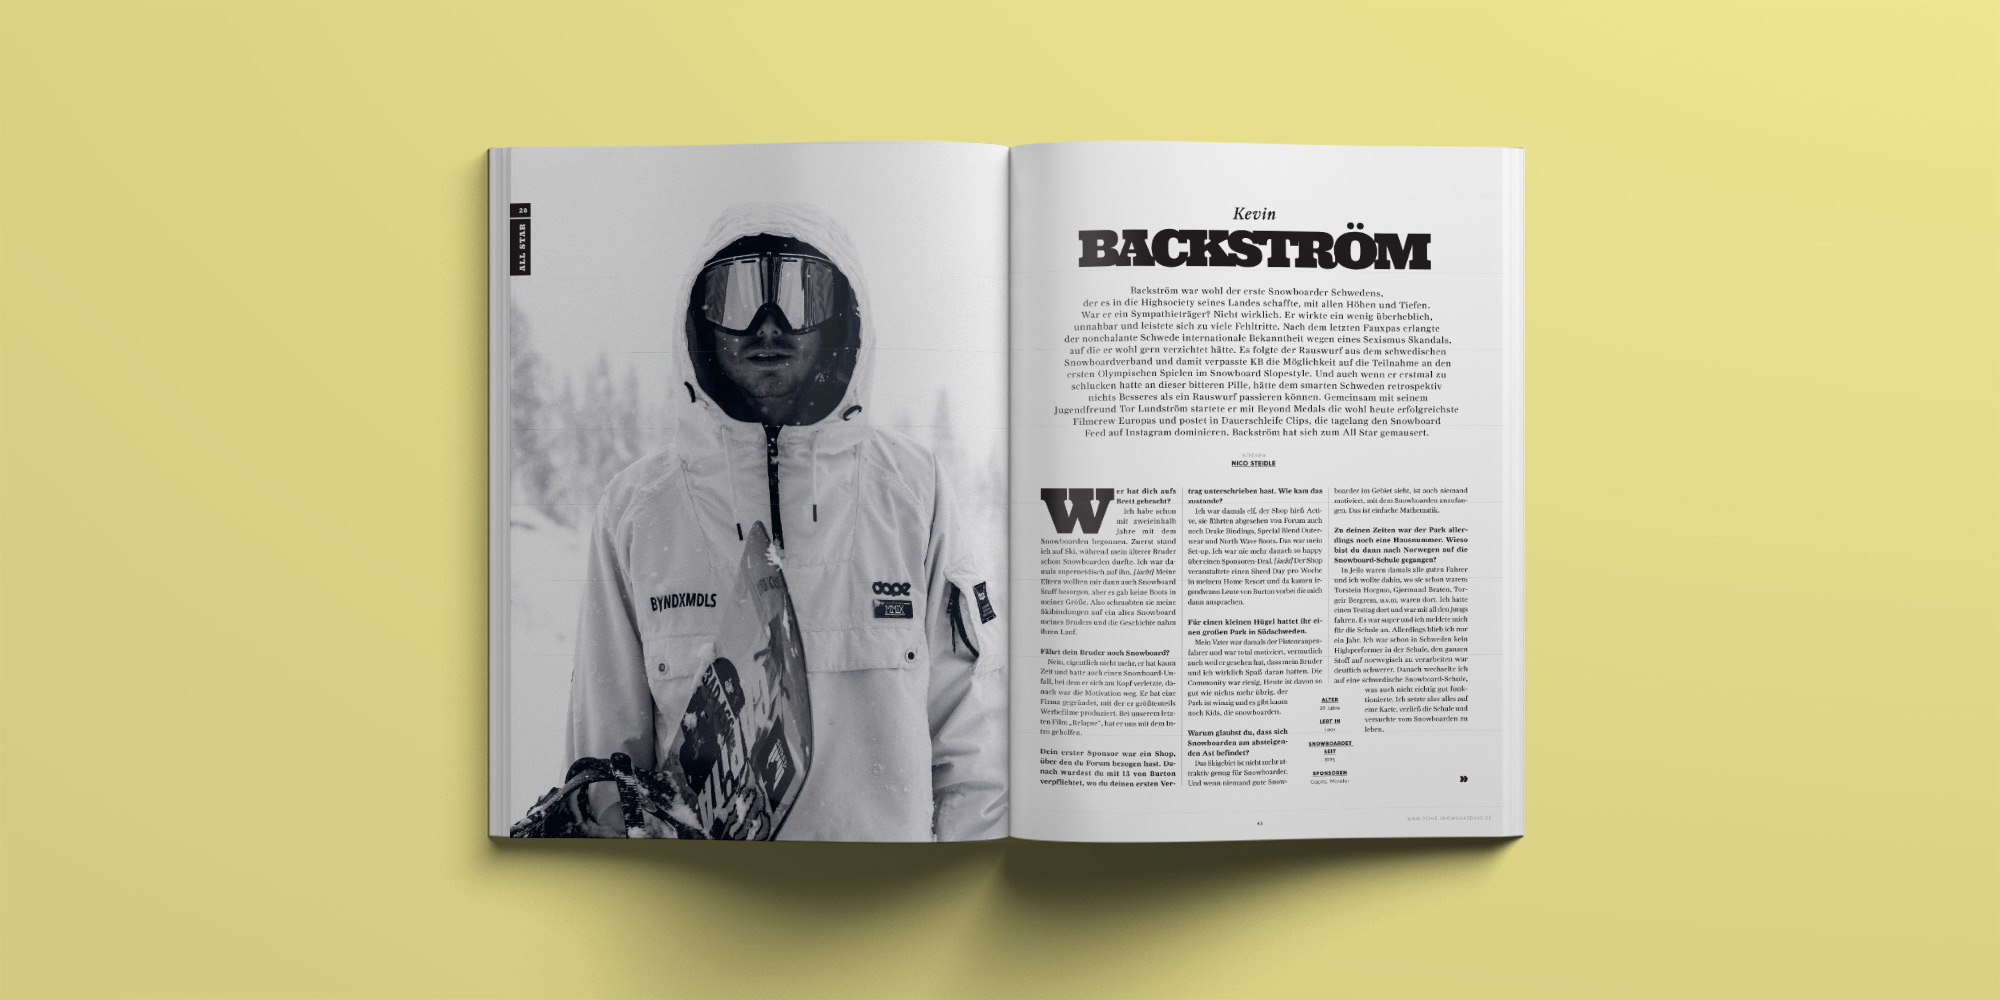 PRIME Snowboarding Magazine #28 – Die All Star-Sonderausgabe | Kevin Backström